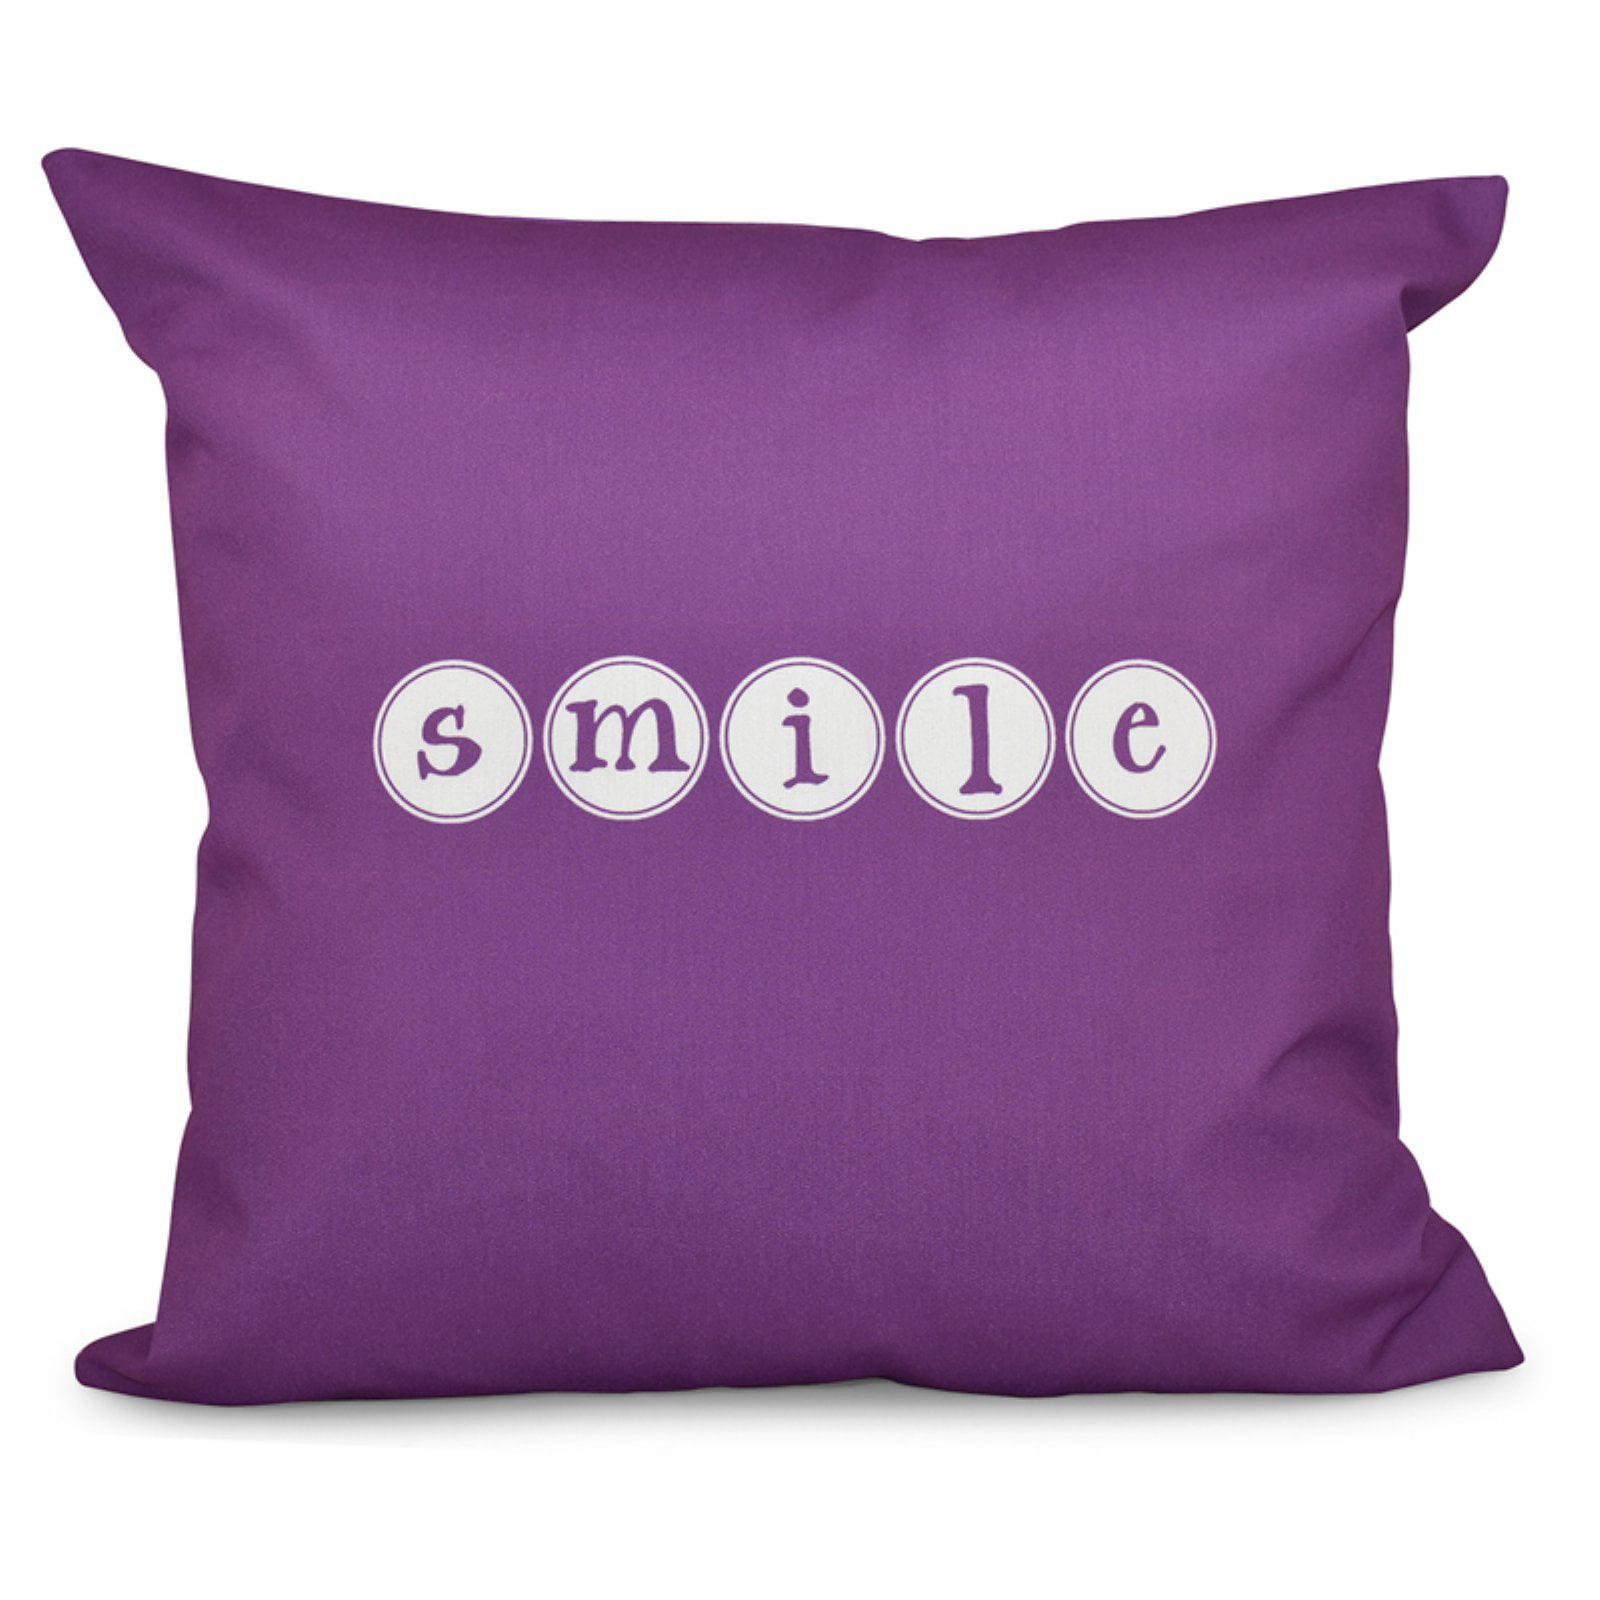 E by design Decorative Pillow Purple 